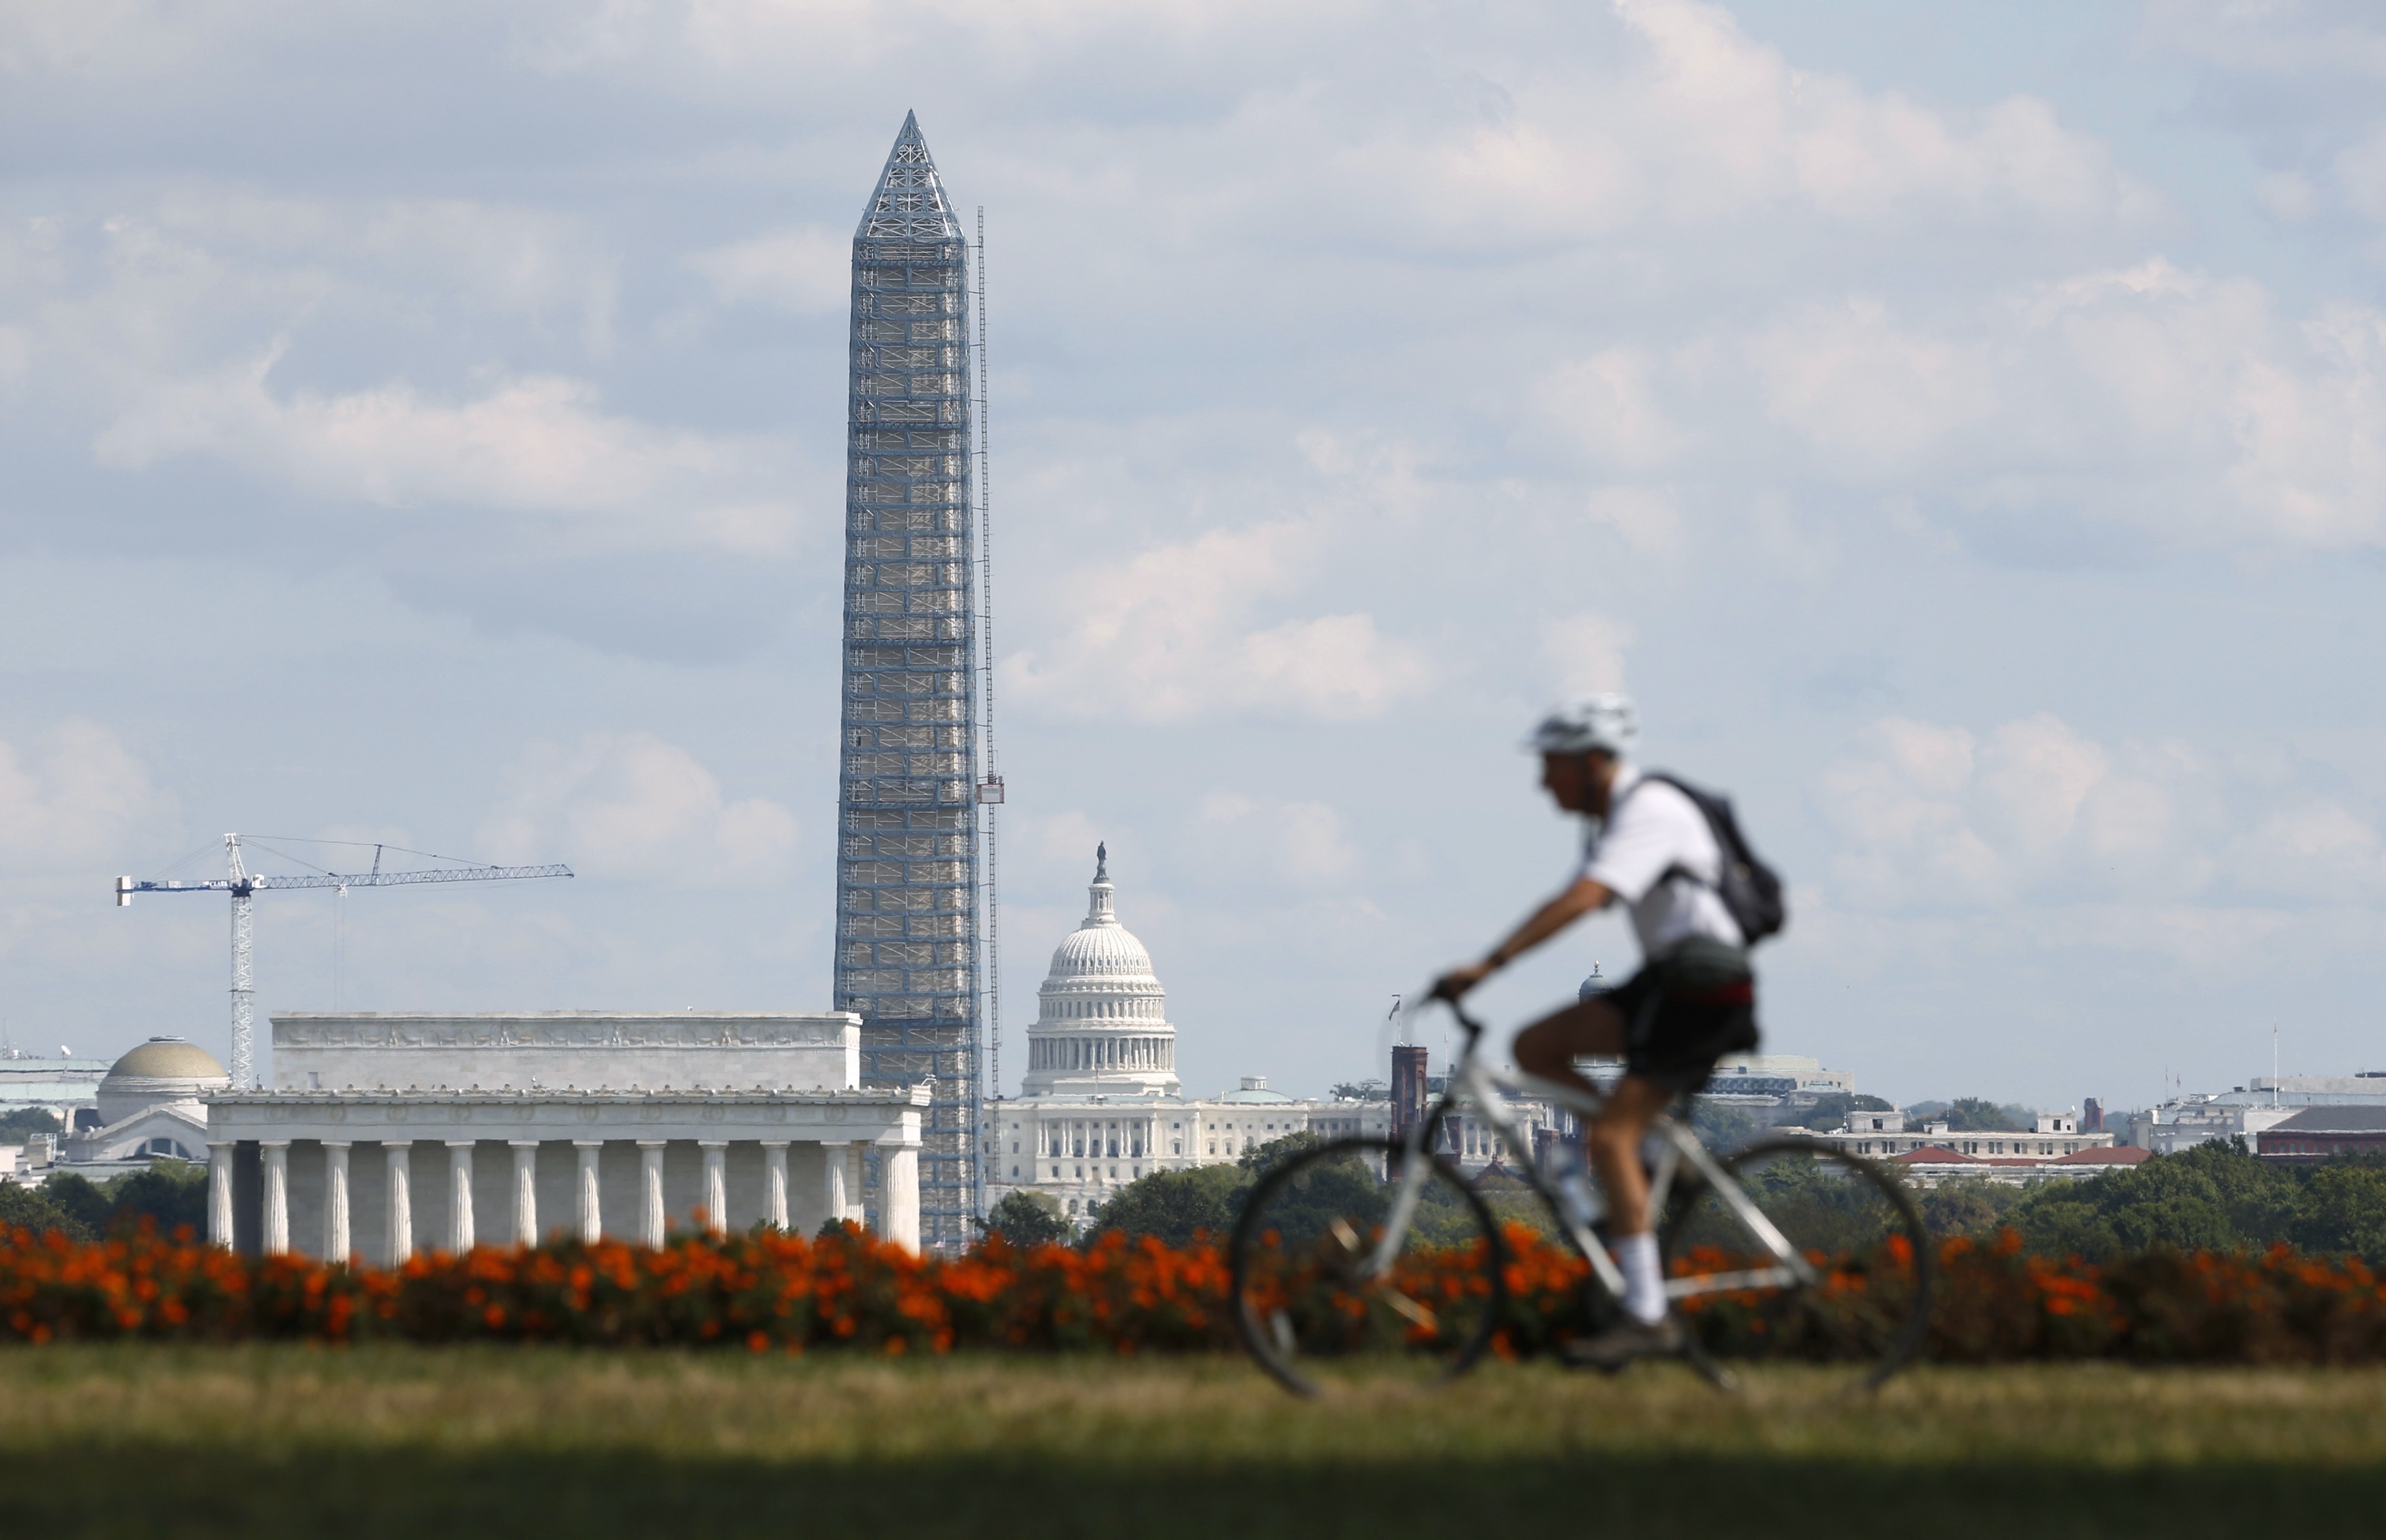 ΤΟ μνημείο Λίνκολν στην Ουάσινγκτον θα μείνει κλειστό μέχρι νεοτέρας - ΦΩΤΟ REUTERS